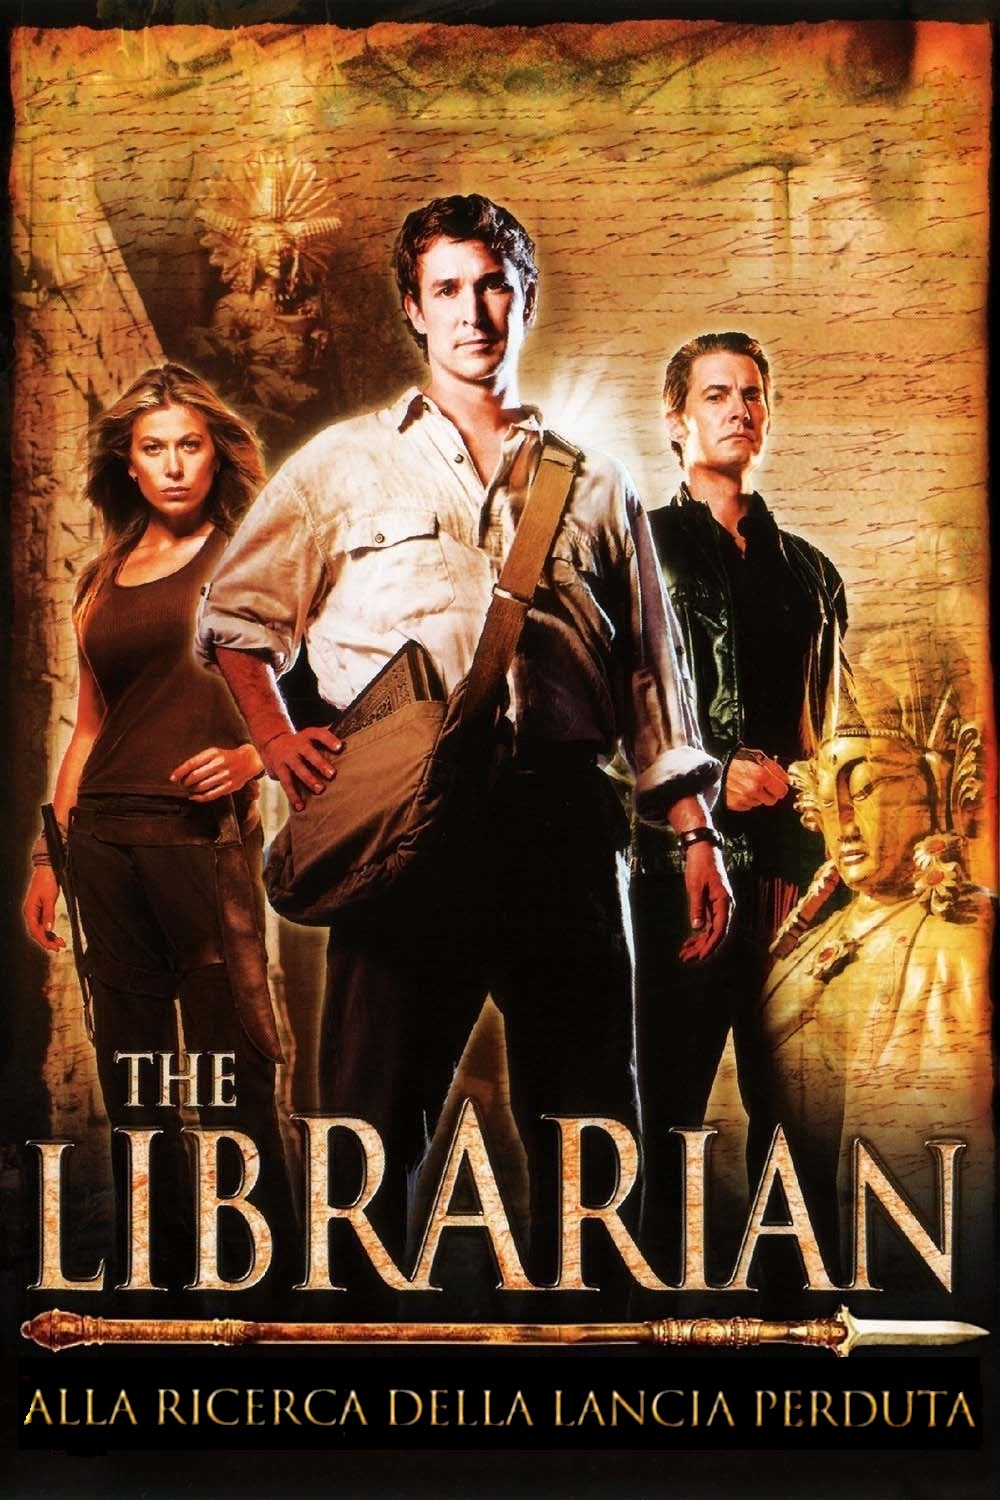 The Librarian – Alla ricerca della lancia perduta (2004)